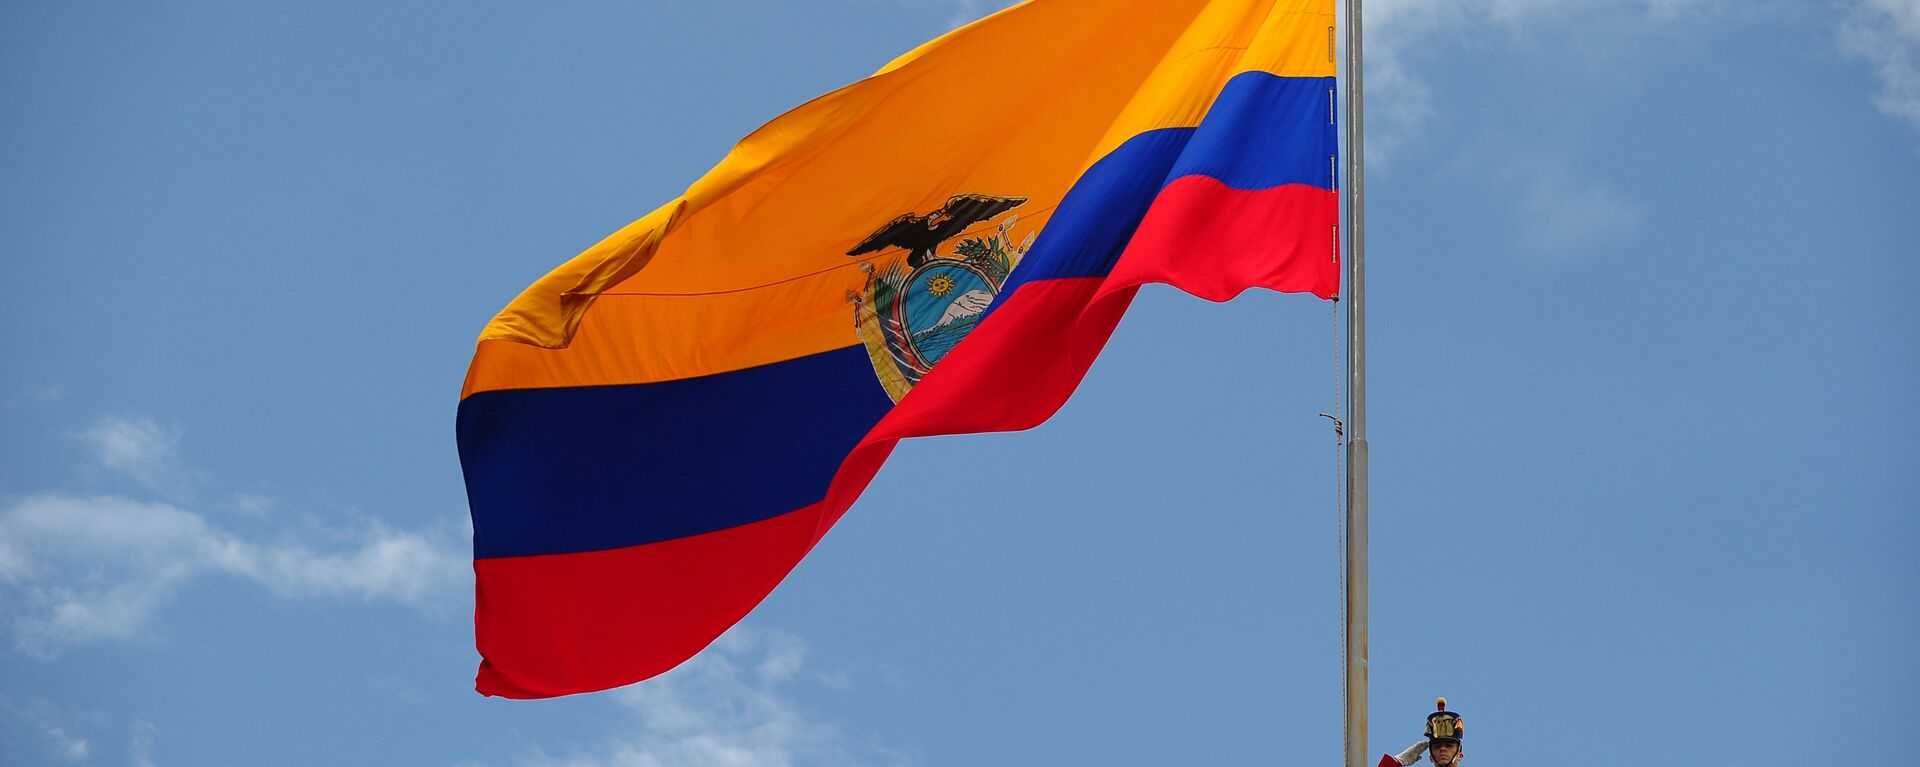 Bandera de Ecuador - Sputnik Mundo, 1920, 10.06.2021